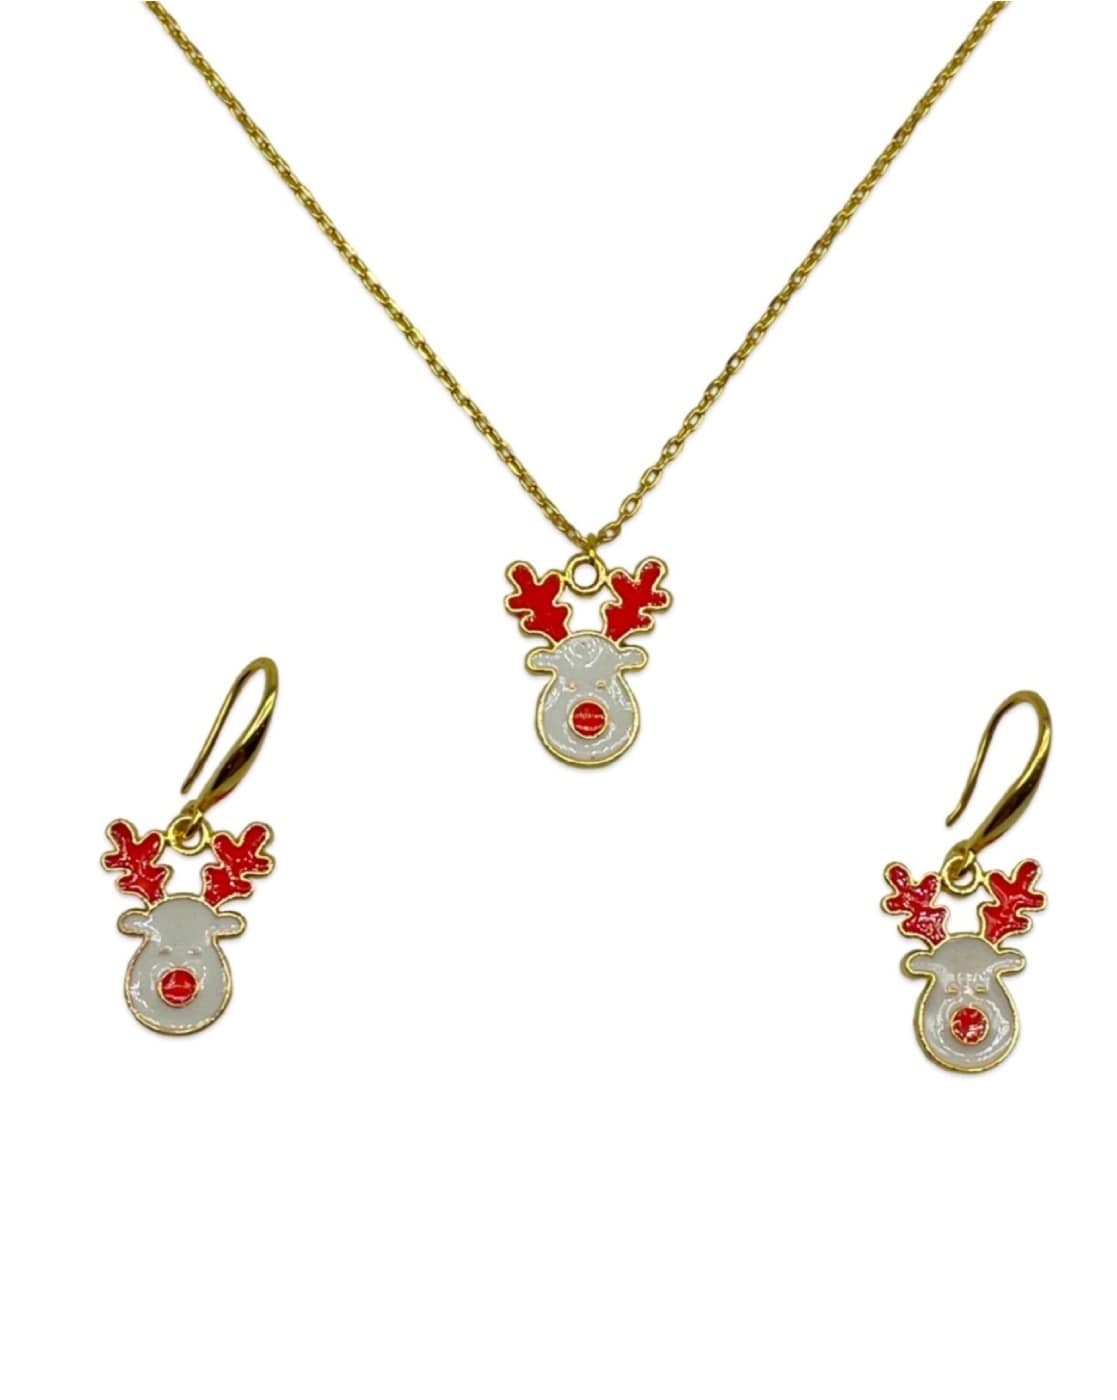 Christmas Necklaces: Design Inspirations and How to Make Them - Xinar.com